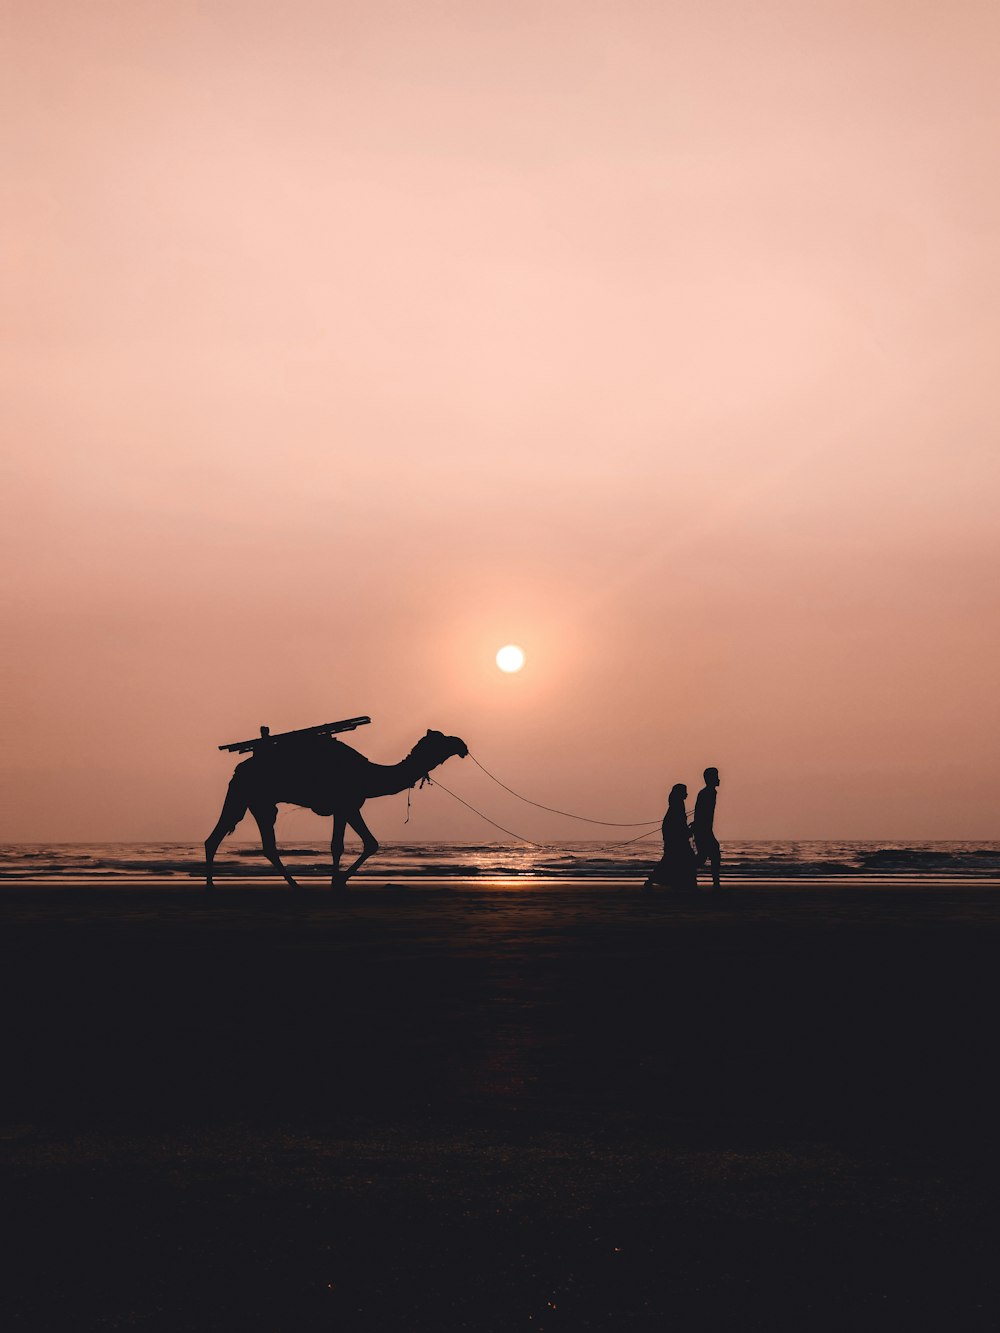 Silueta de 2 personas montando a caballo durante la puesta del sol